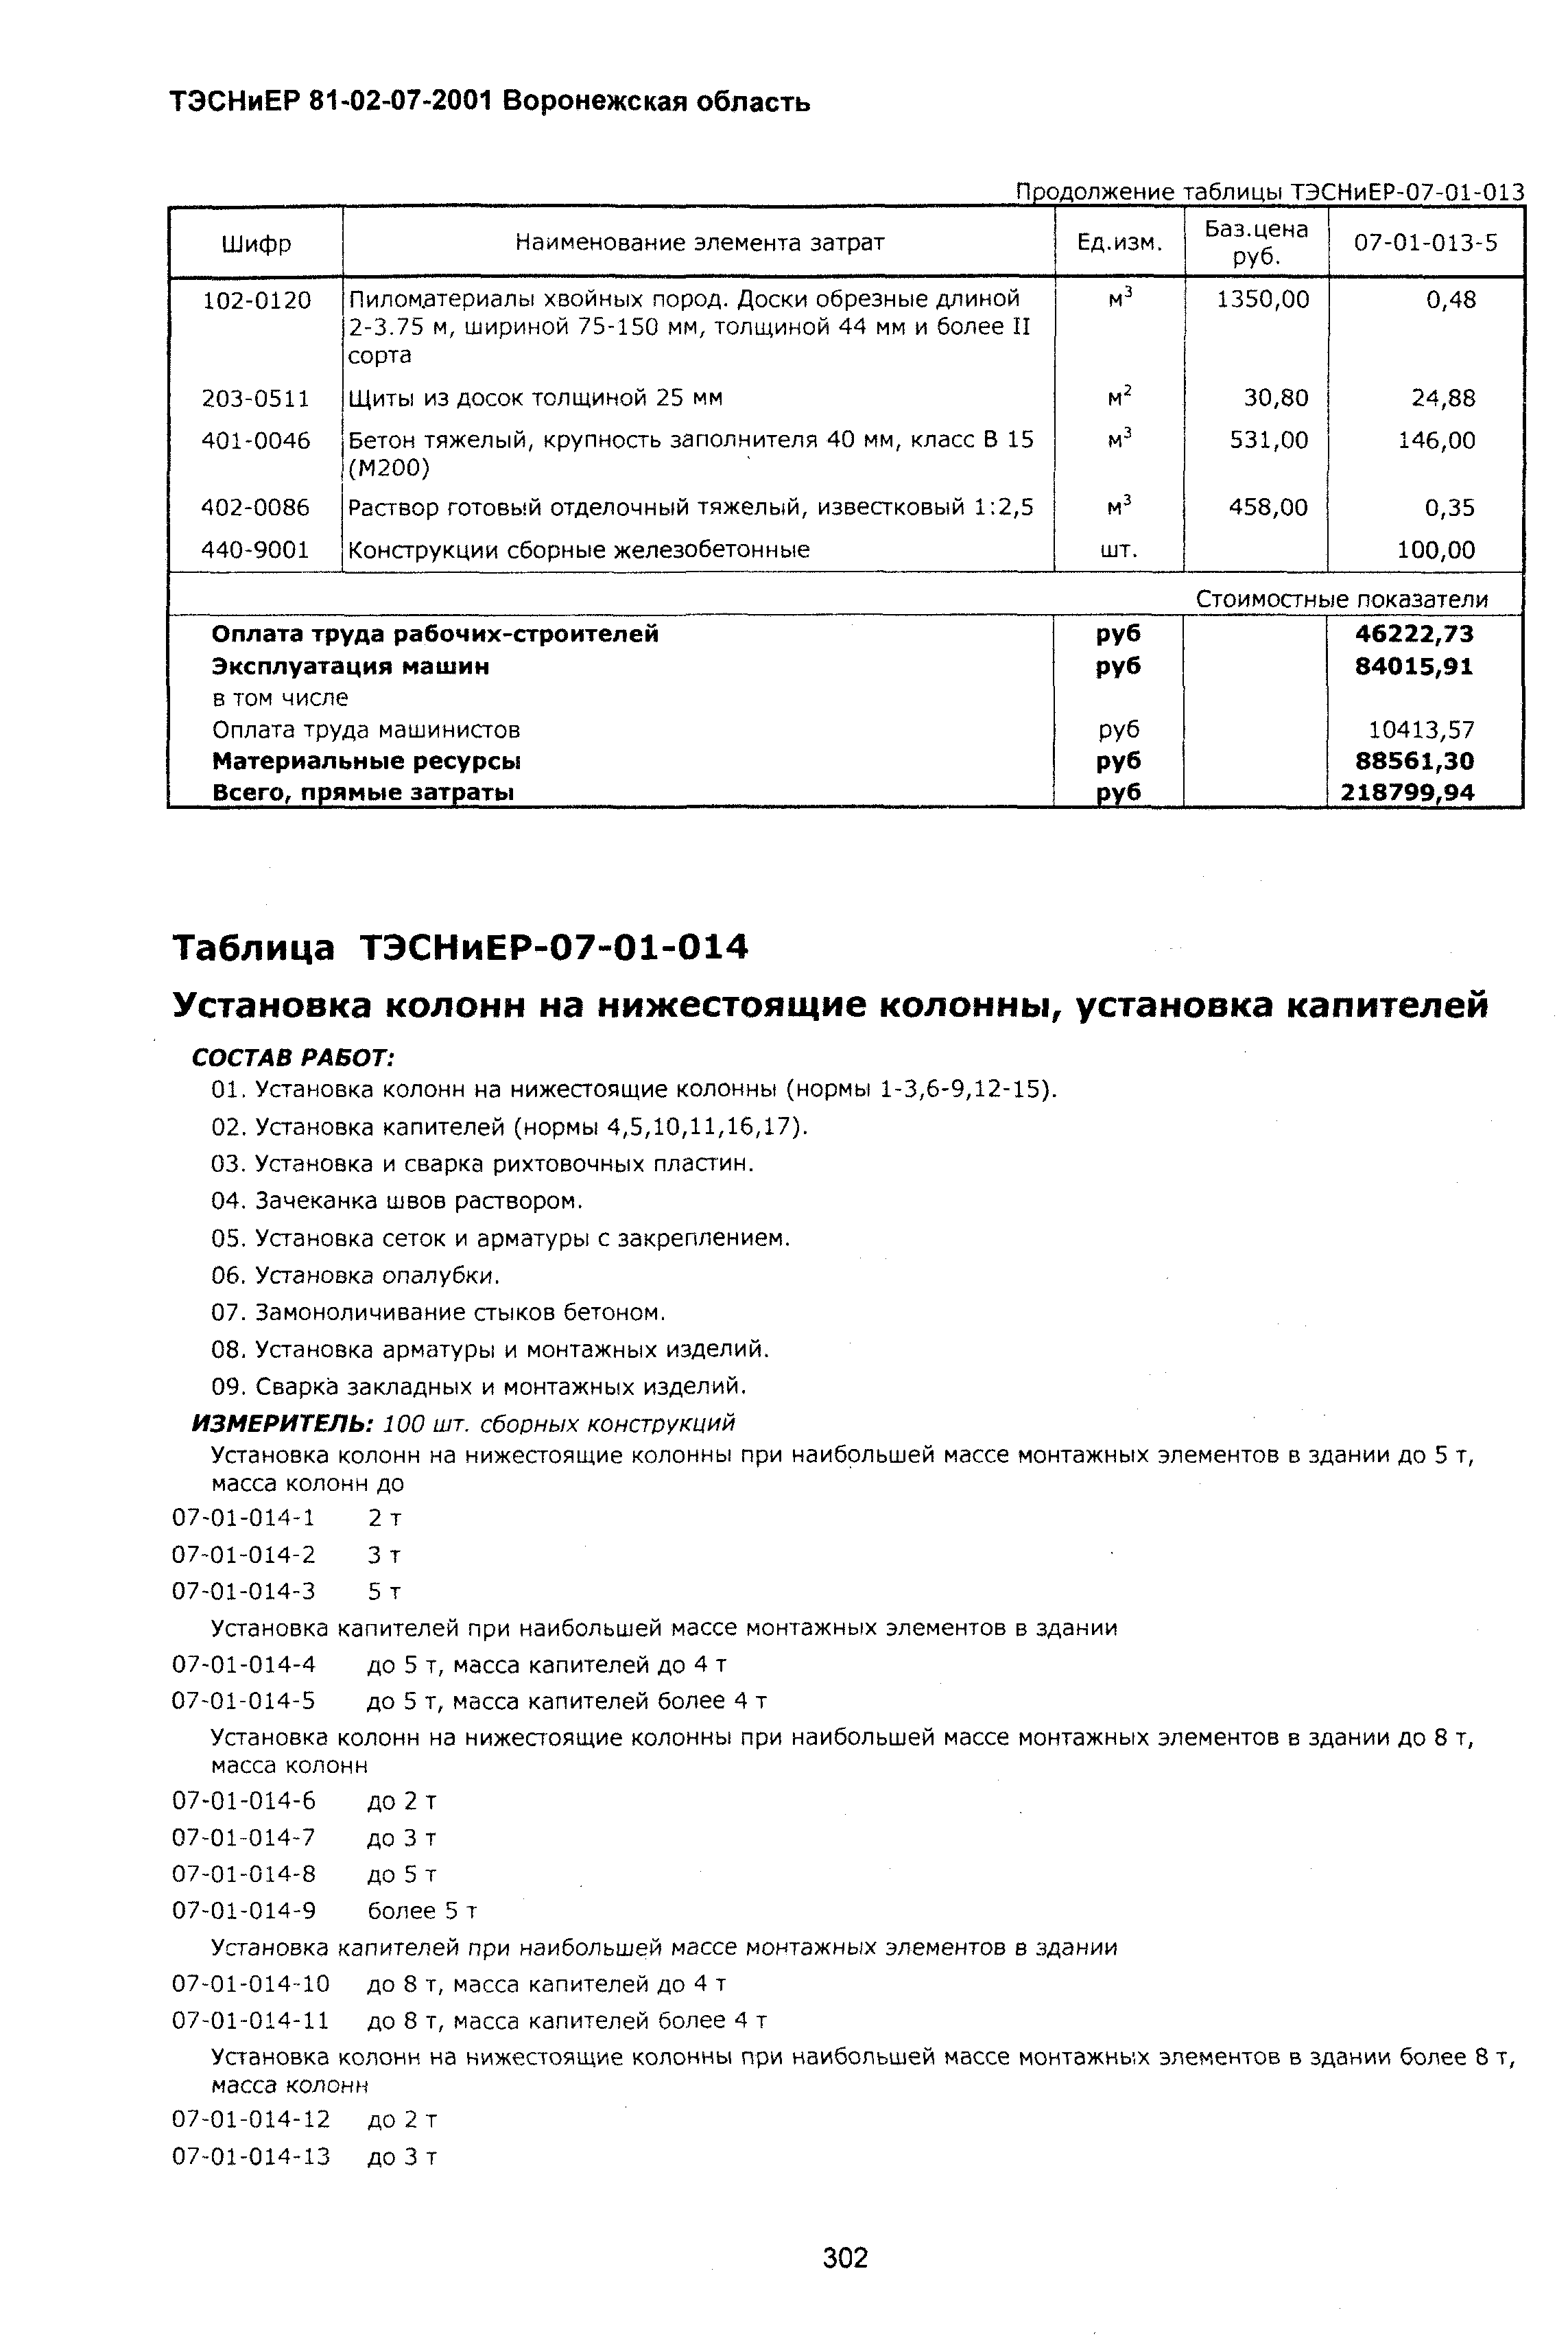 ТЭСНиЕР Воронежской области 81-02-07-2001